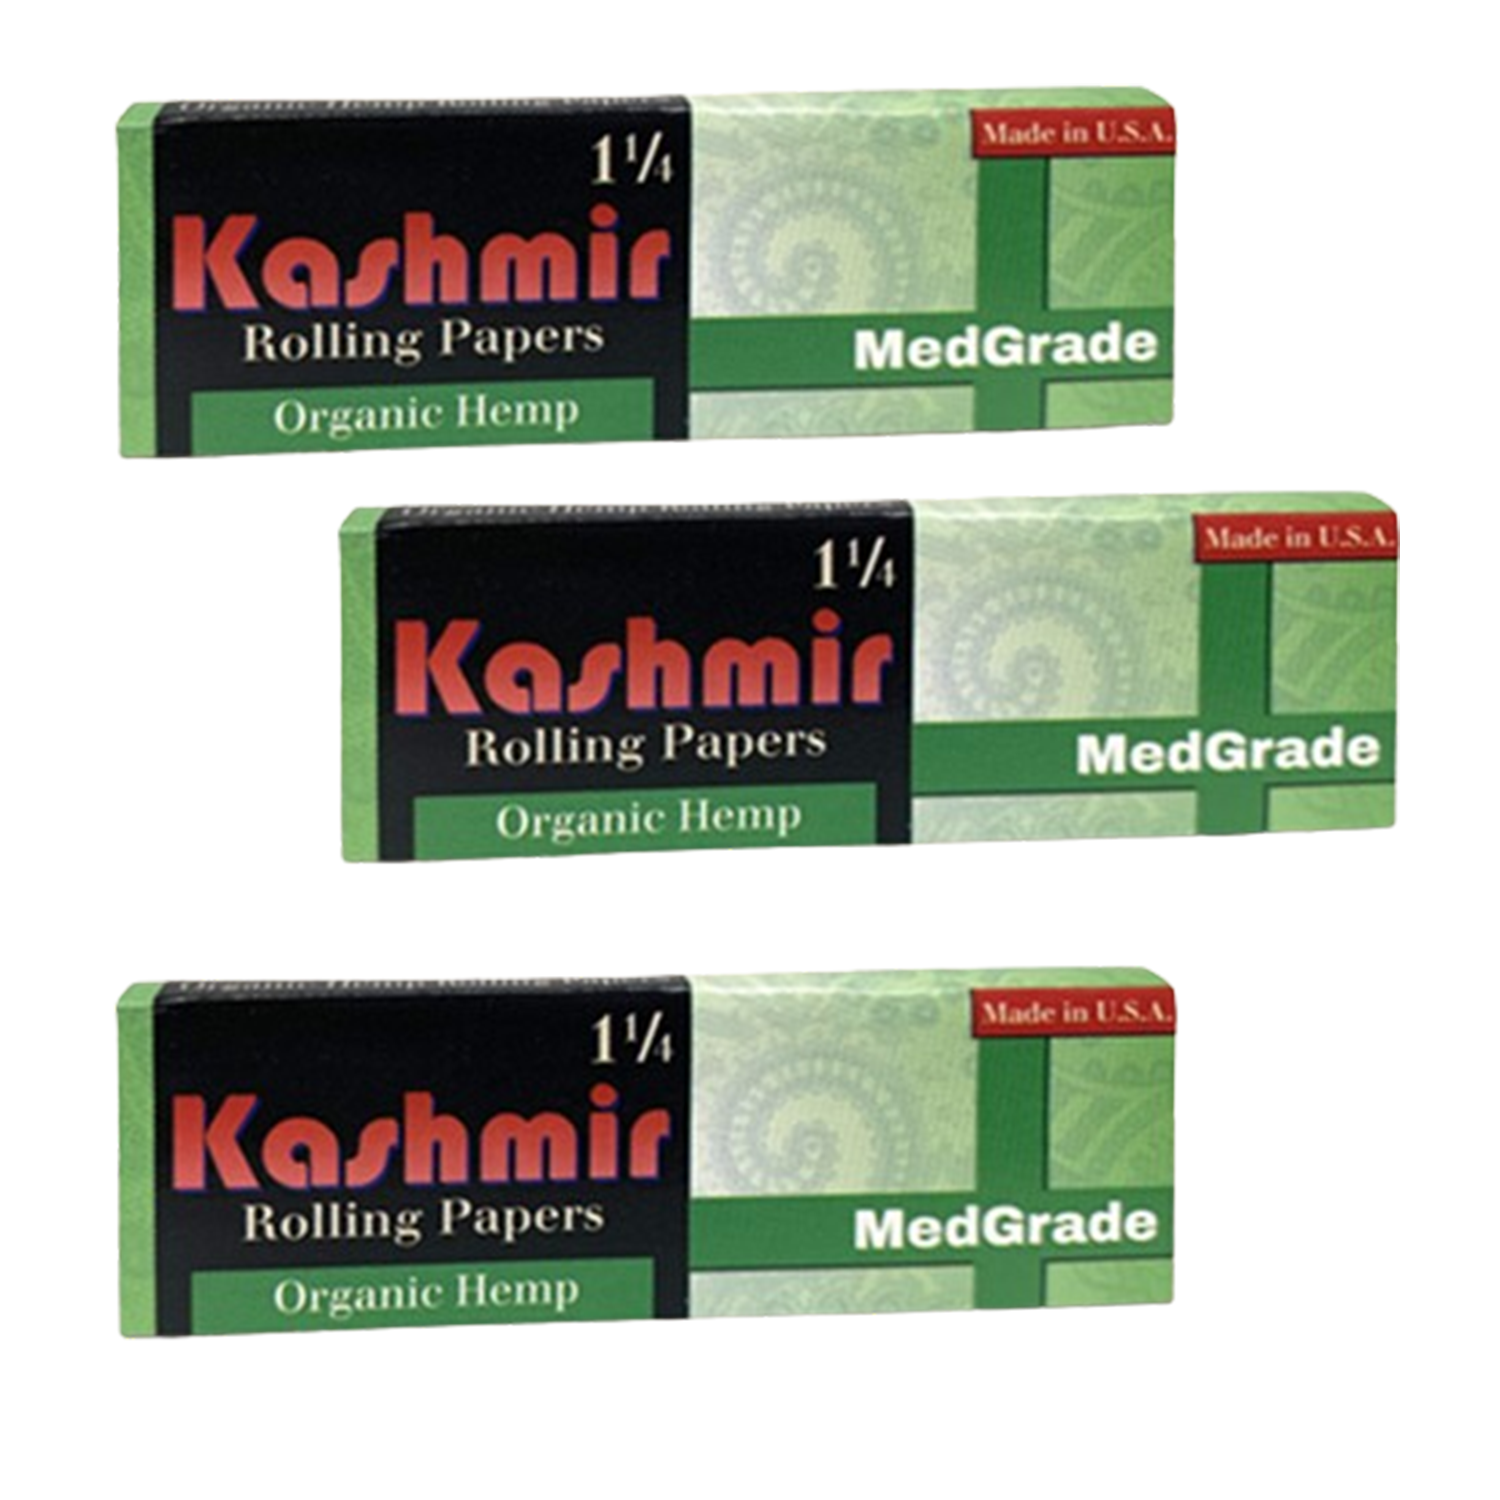 Kashmir MedGrade Rolling Papers 1 1/4